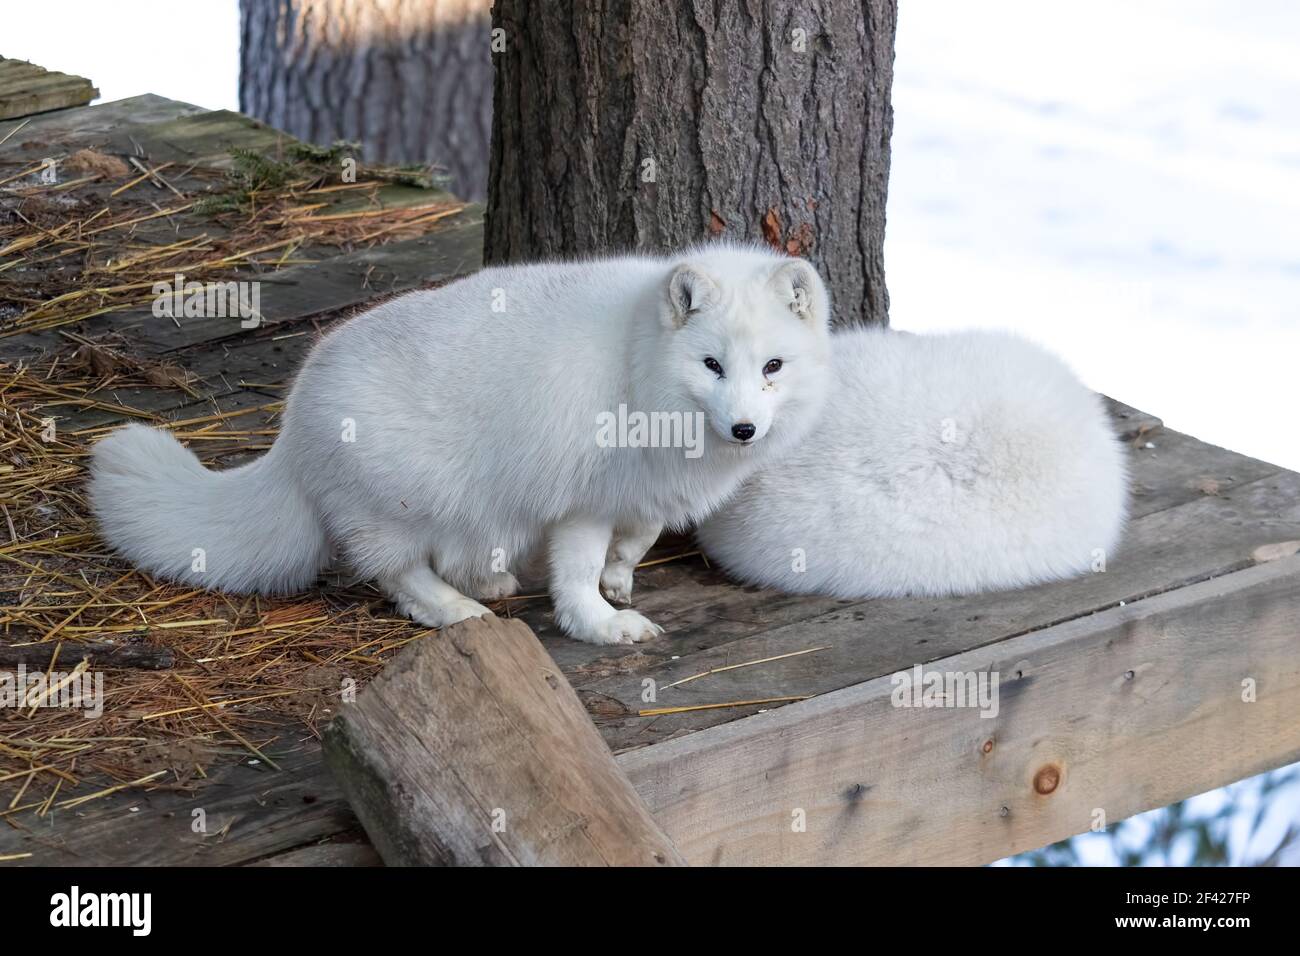 Deux renards arctiques blancs. L'un est de napping et l'autre veut jouer! Banque D'Images